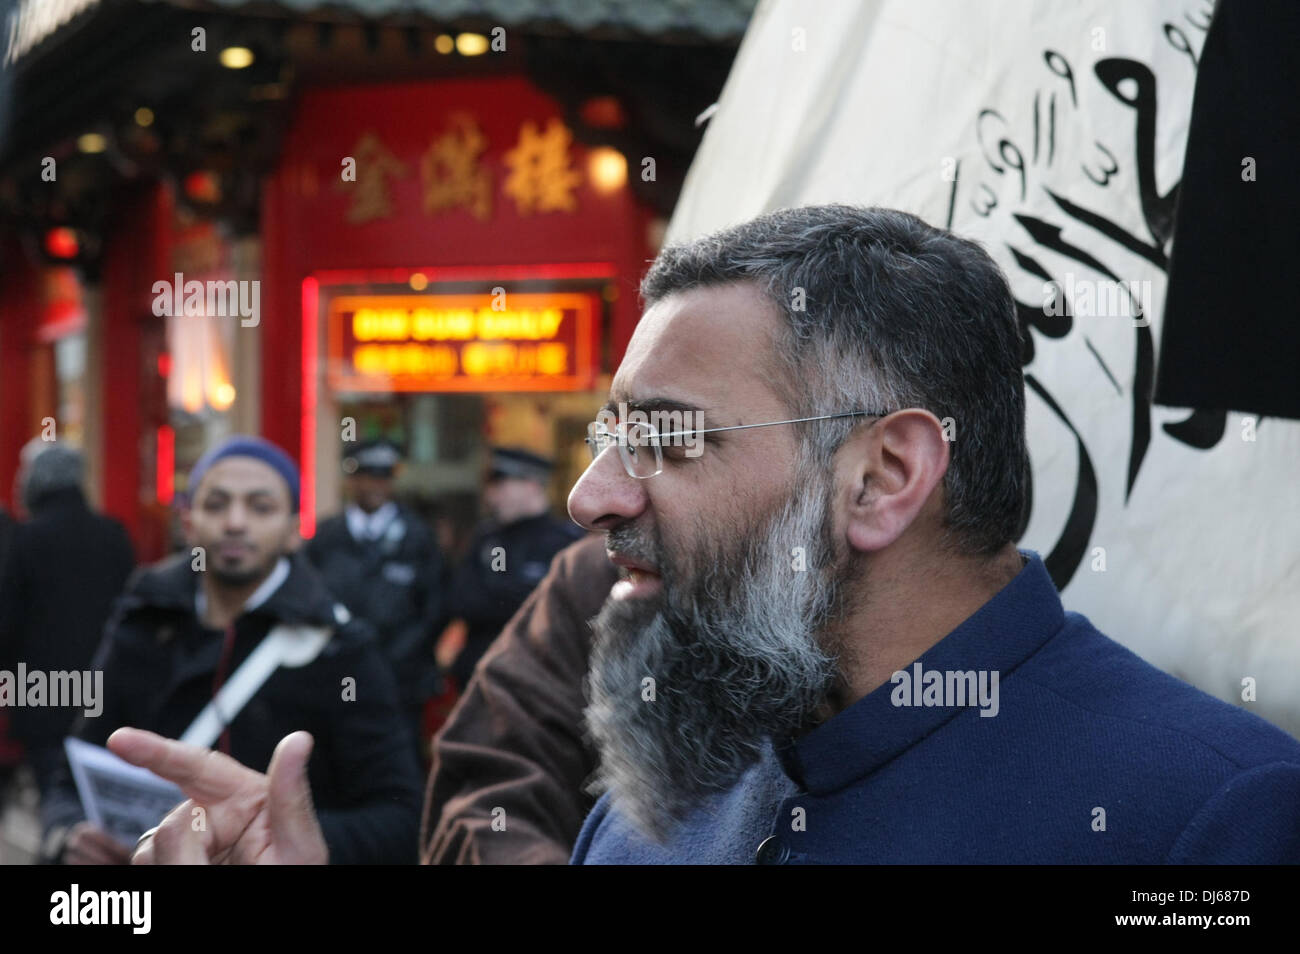 London, UK. 22. November 2013. Anjem Choudary spricht in seiner islamischen Roadshow Protest gegen die chinesische Unterdrückung gegen die Muslime von Xinjiang, Gerrard Street, London, UK, zu stoppen 22. November 2013 Credit: Martyn Wheatley/Alamy Live News Stockfoto